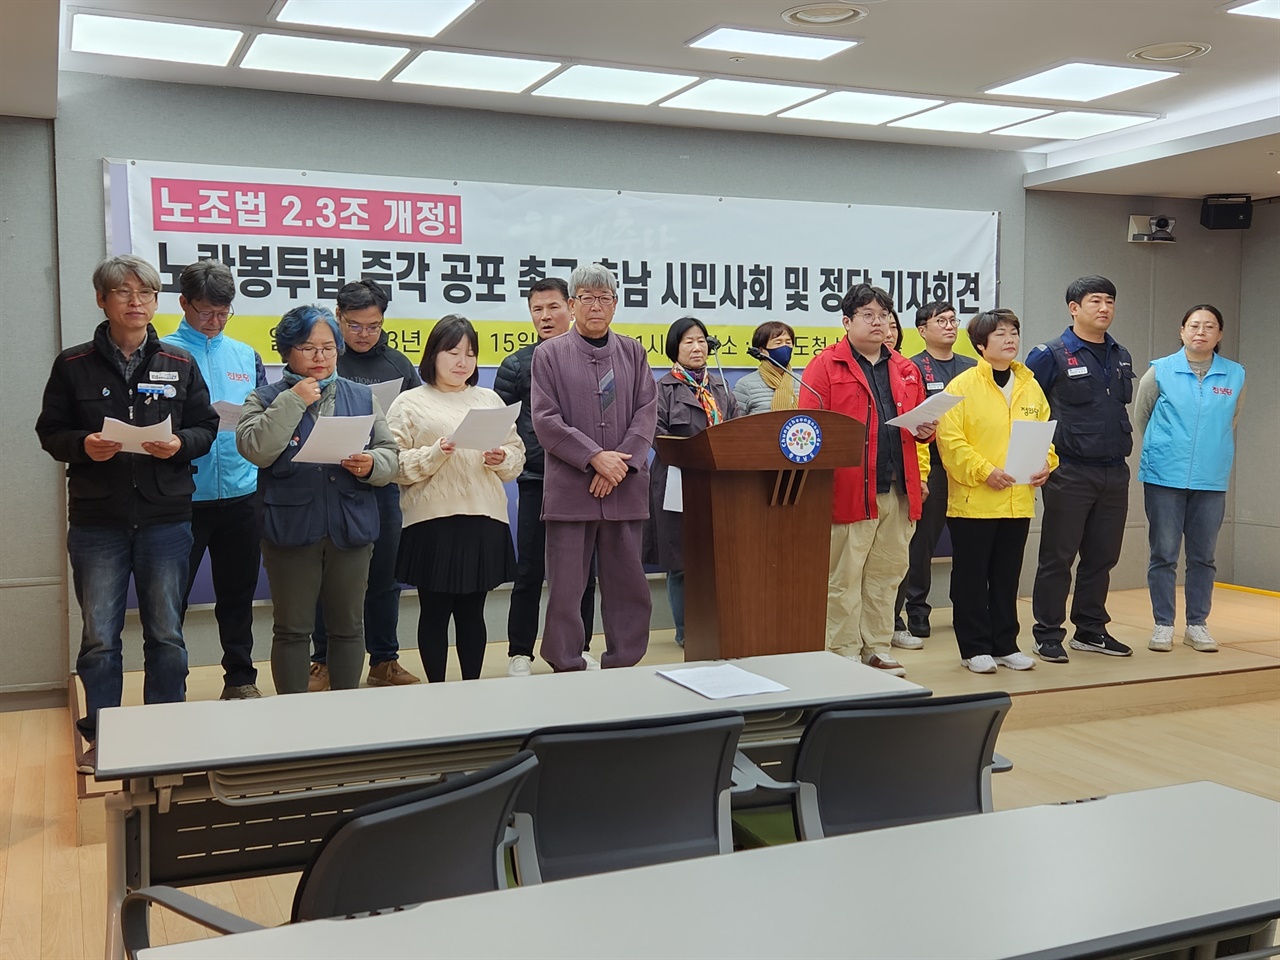 15일 충남 시민사회단체와 진보정당들이 기자회견을 통해 노란봉투법 개정안을 즉각 공포할 것을 촉구했다. 